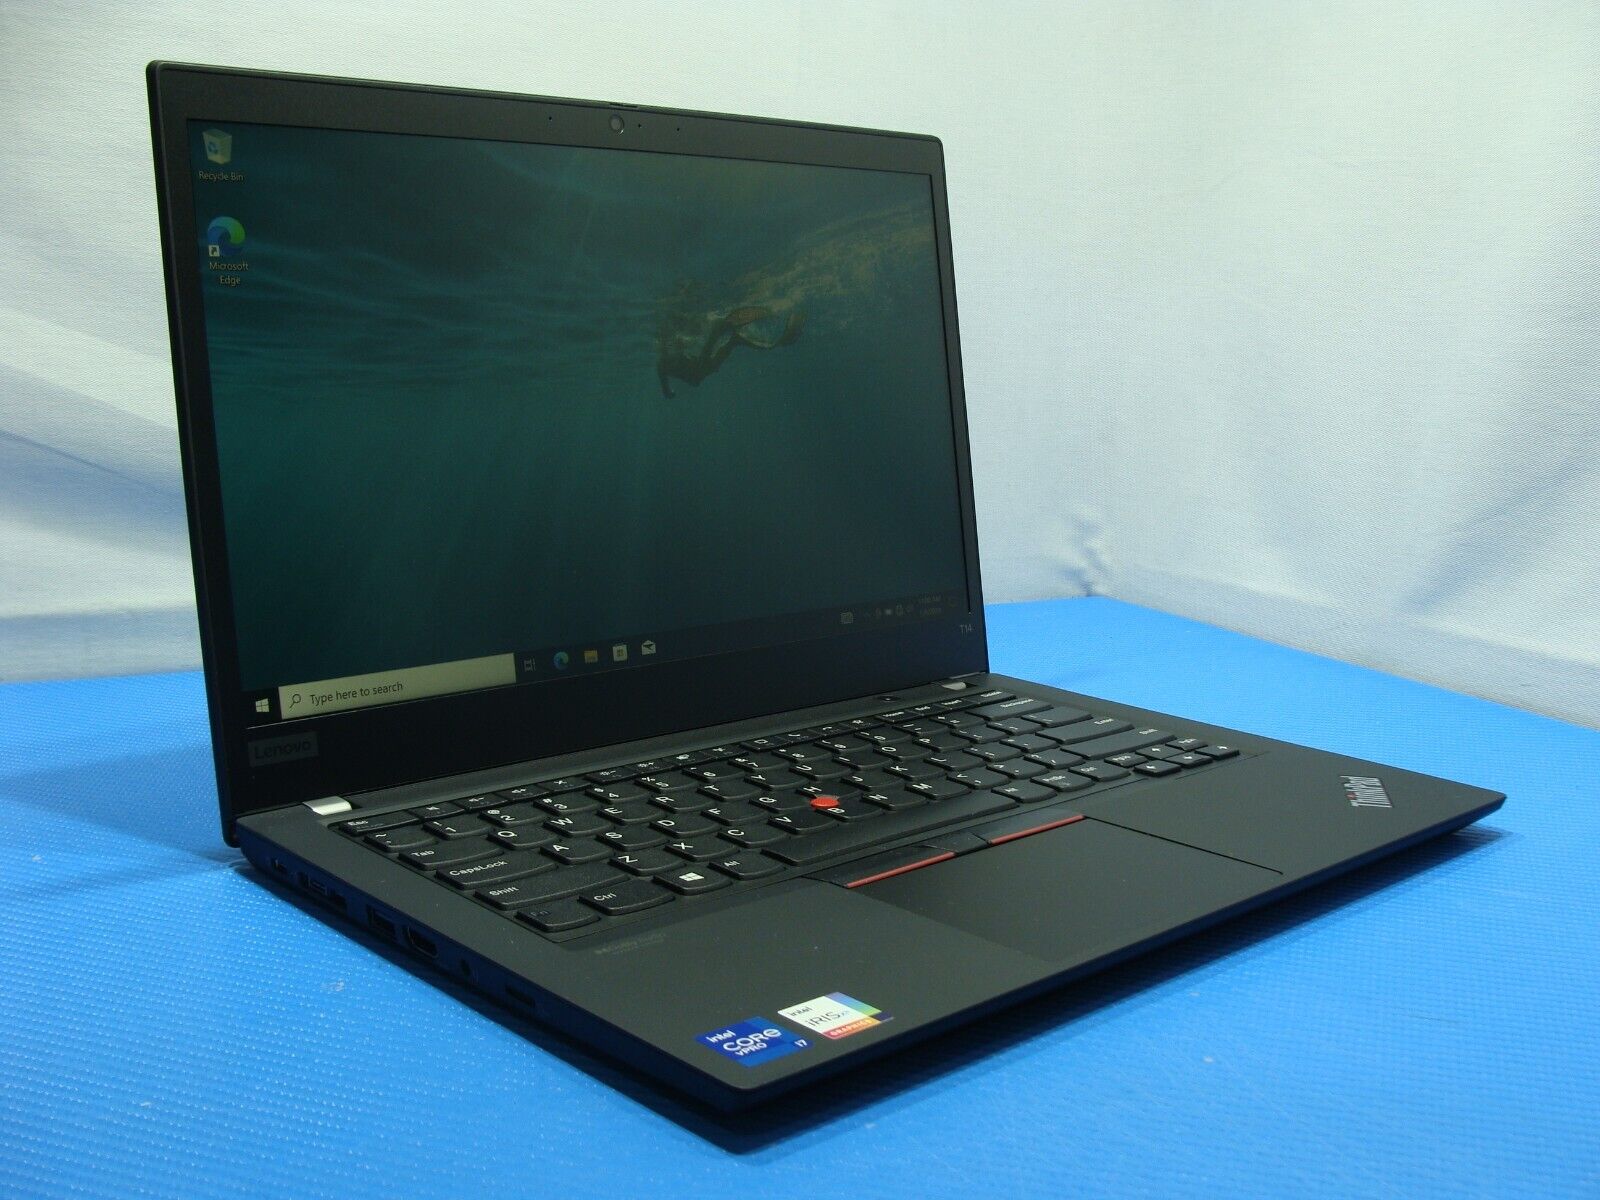 Lenovo ThinkPad T14 Gen 2i 14